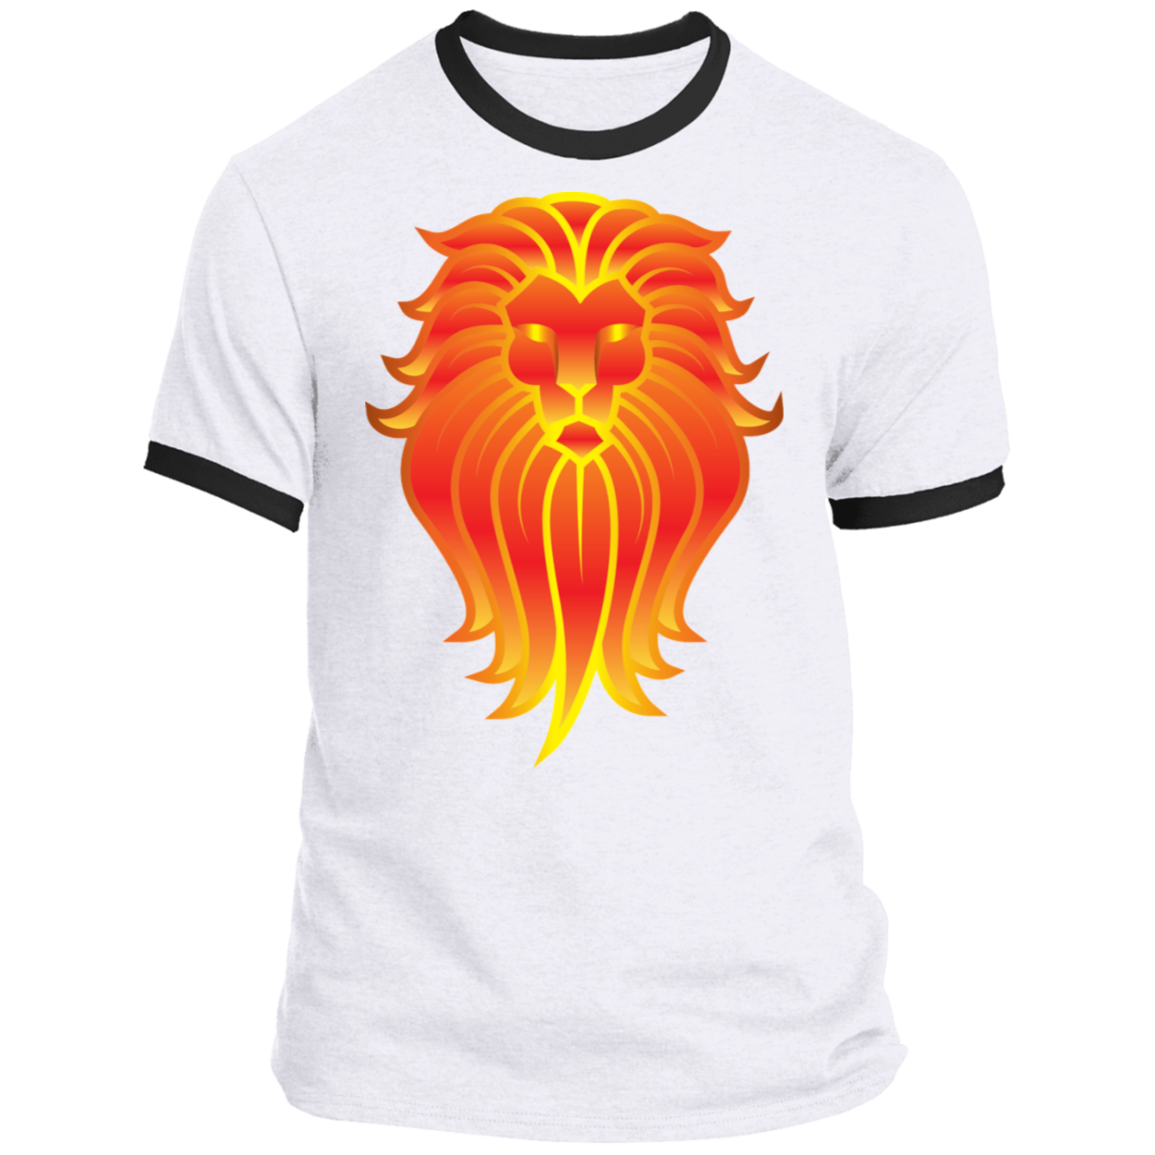 The Lion - Men's Ringer T-shirt